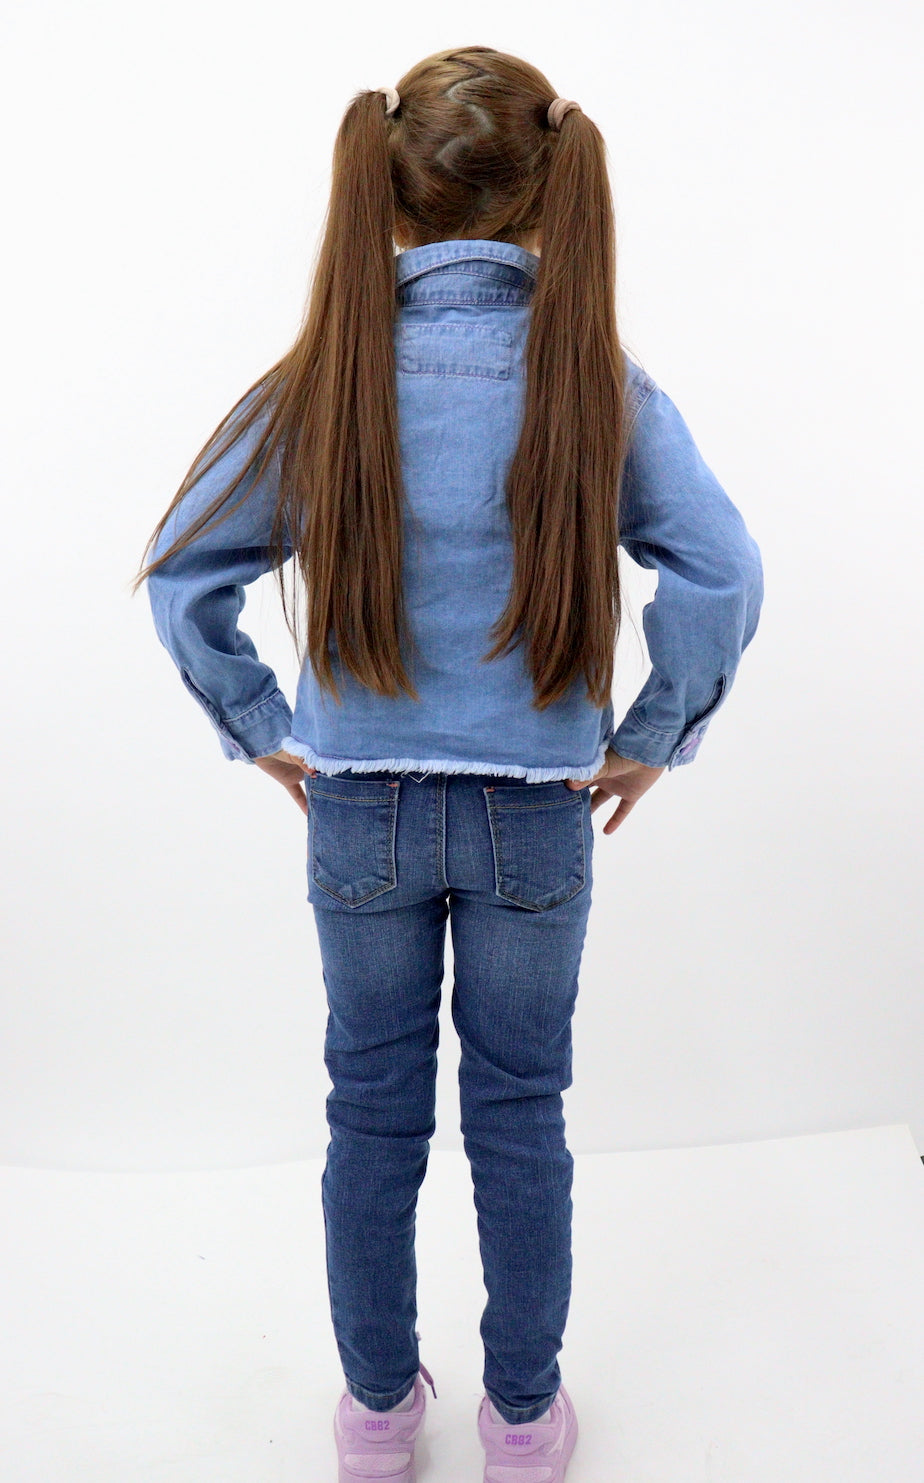 Jeans skinny con cinturón de color azul oscuro